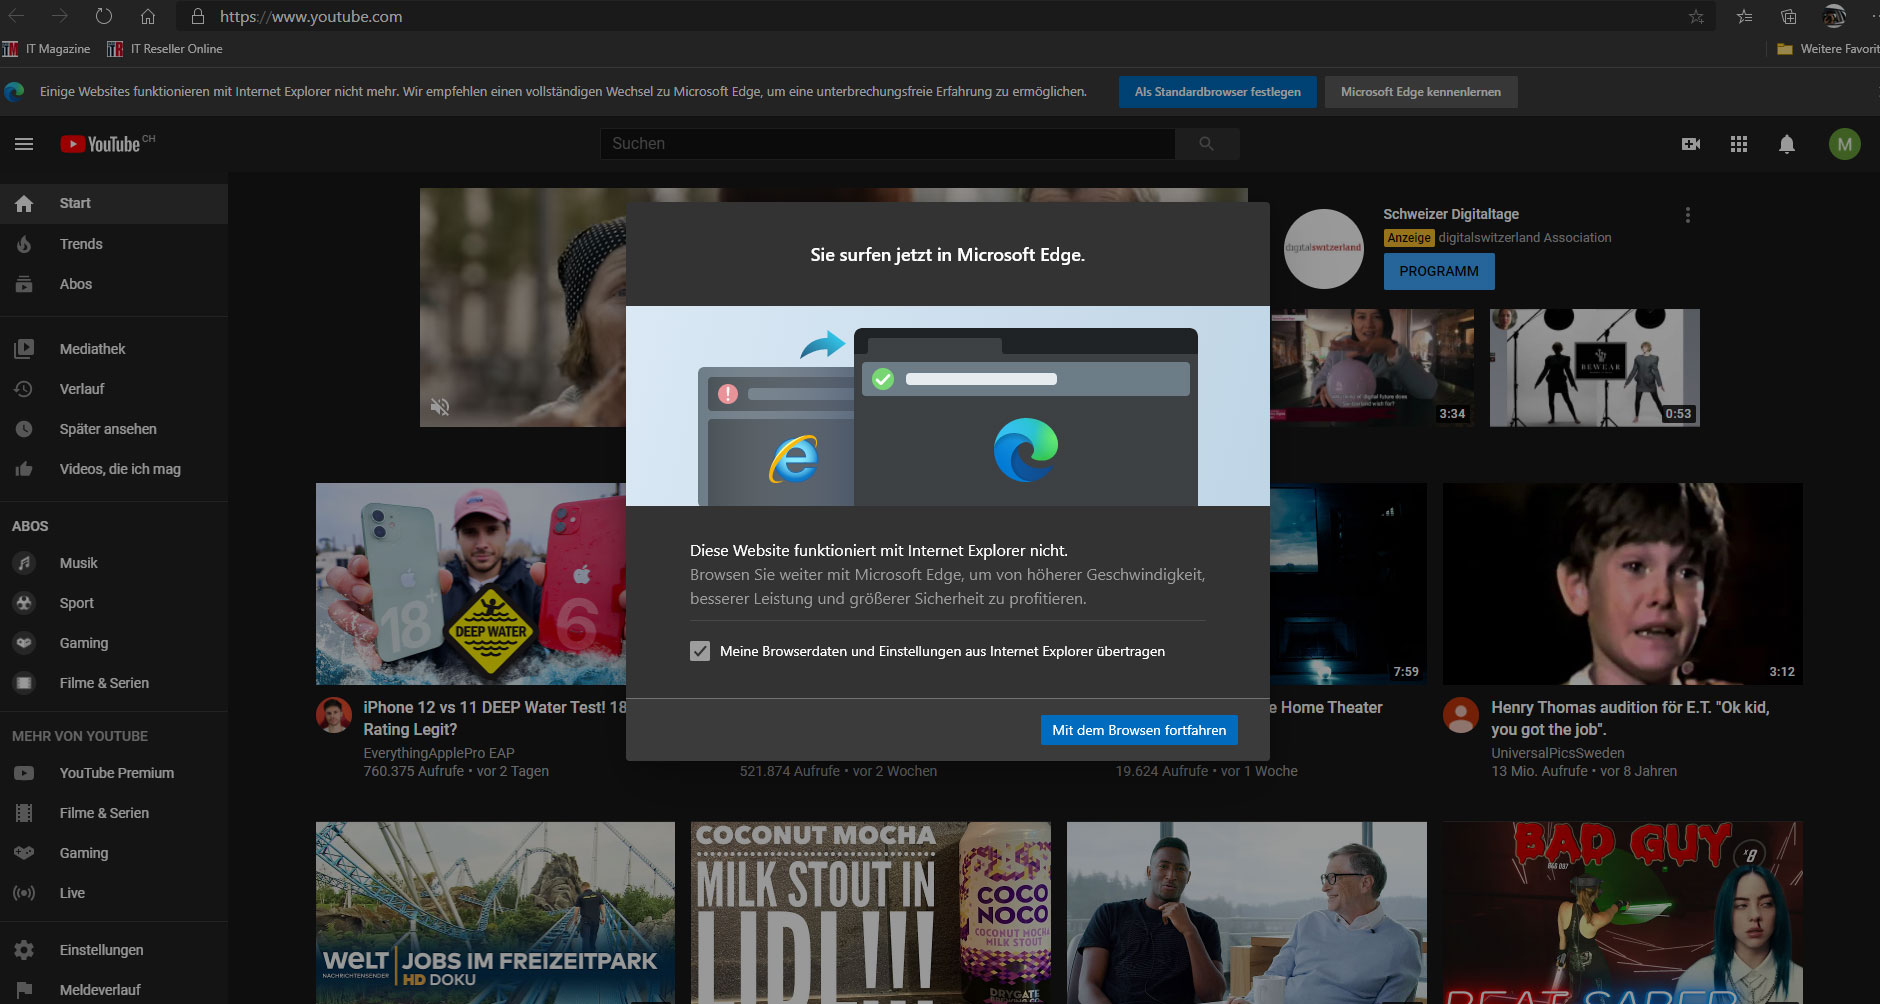 Microsoft beerdigt Internet Explorer - Youtube und über 1000 weitere Sites nicht länger zugänglich